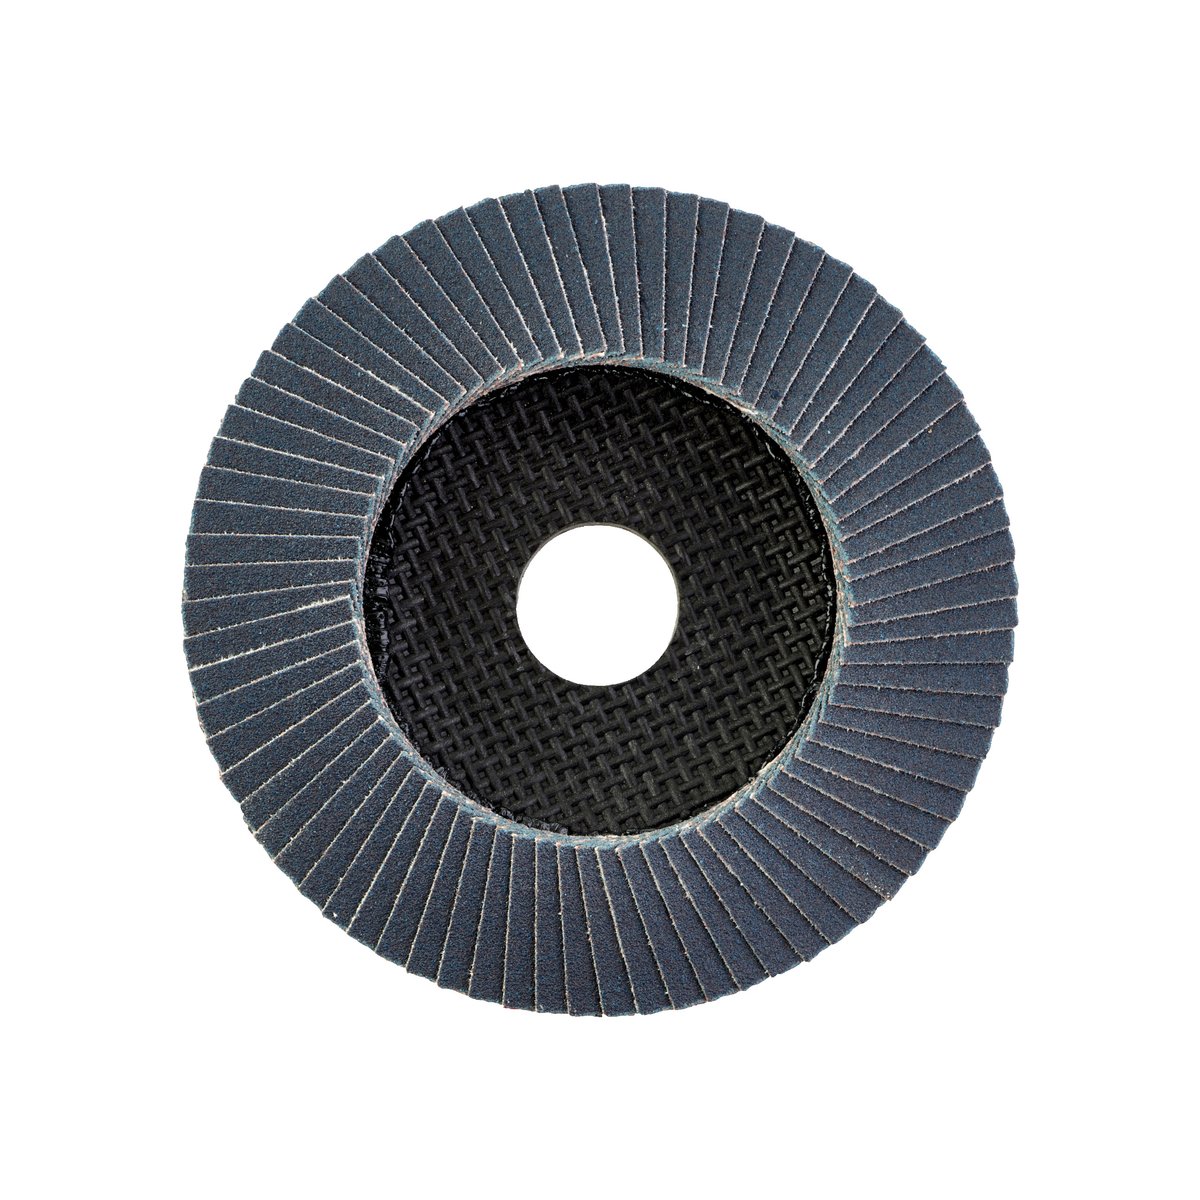 Лепестковый диск SL50/125G80 Zirconium 125 мм / Зерно 80 замена для 4932430414 